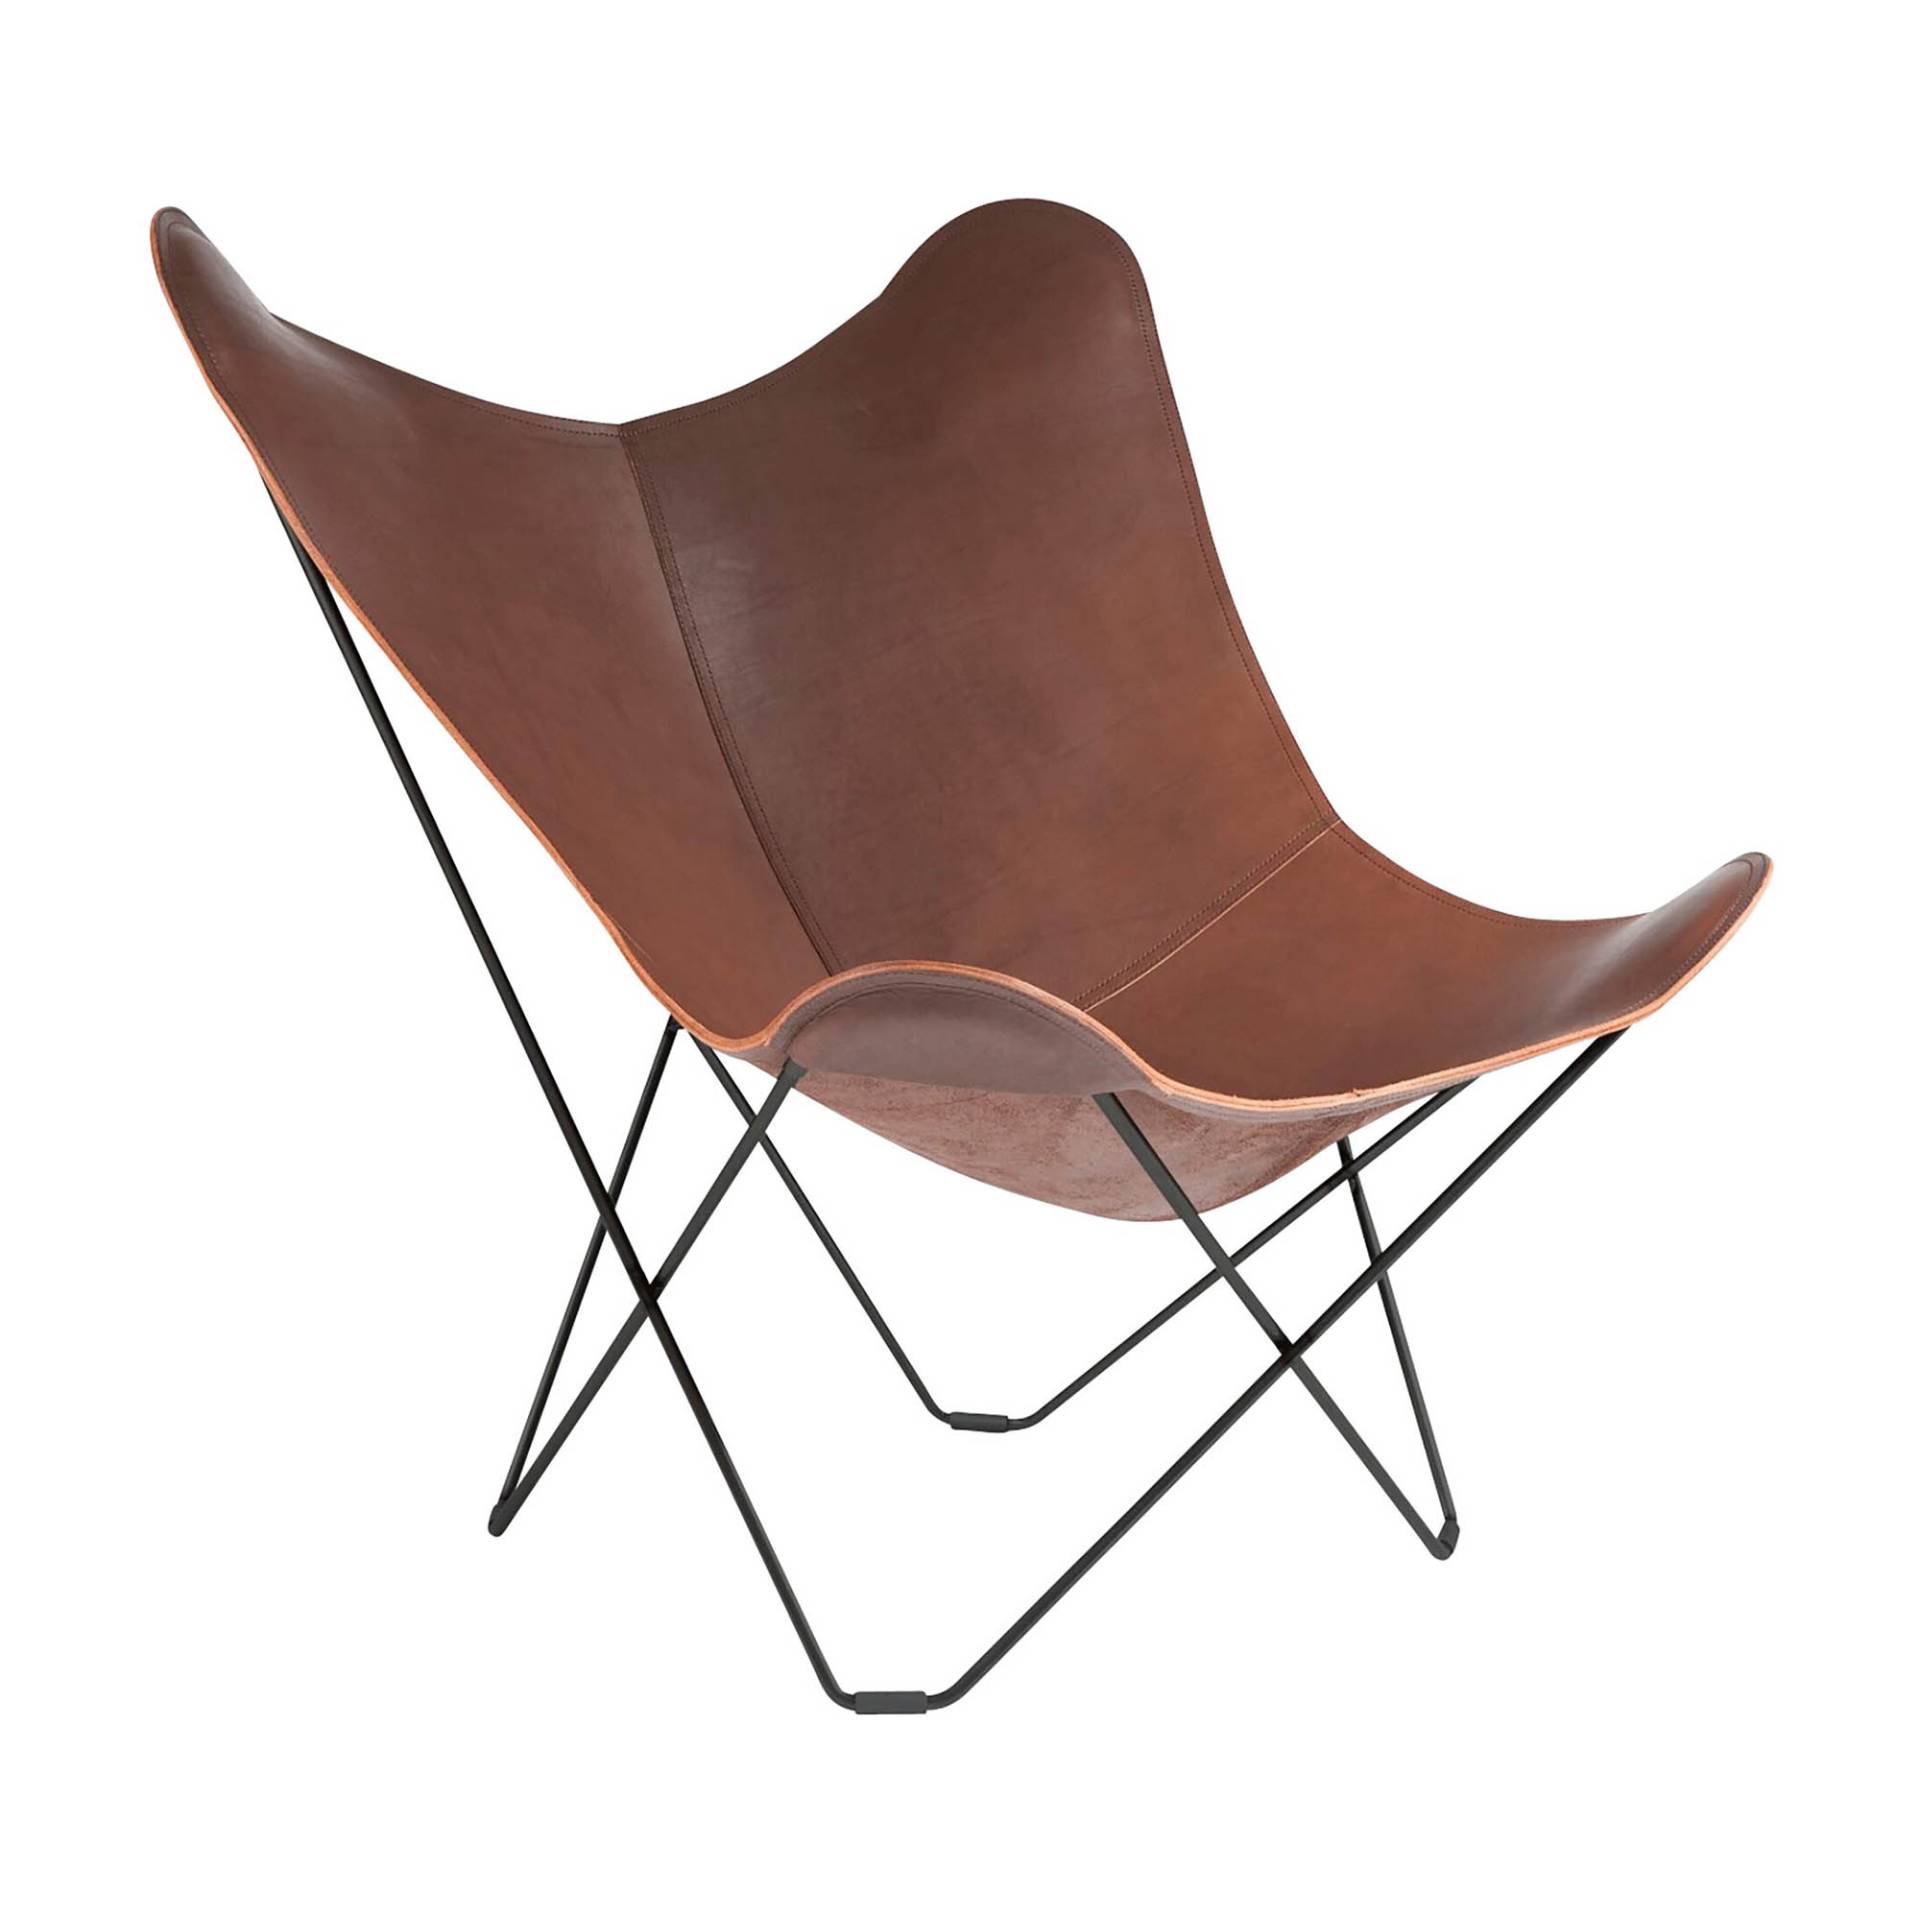 cuero - Pampa Mariposa Butterfly Chair - schokoladenbraun/Leder Chocolate/BxHxT 87x92x86cm/Gestell schwarz von cuero